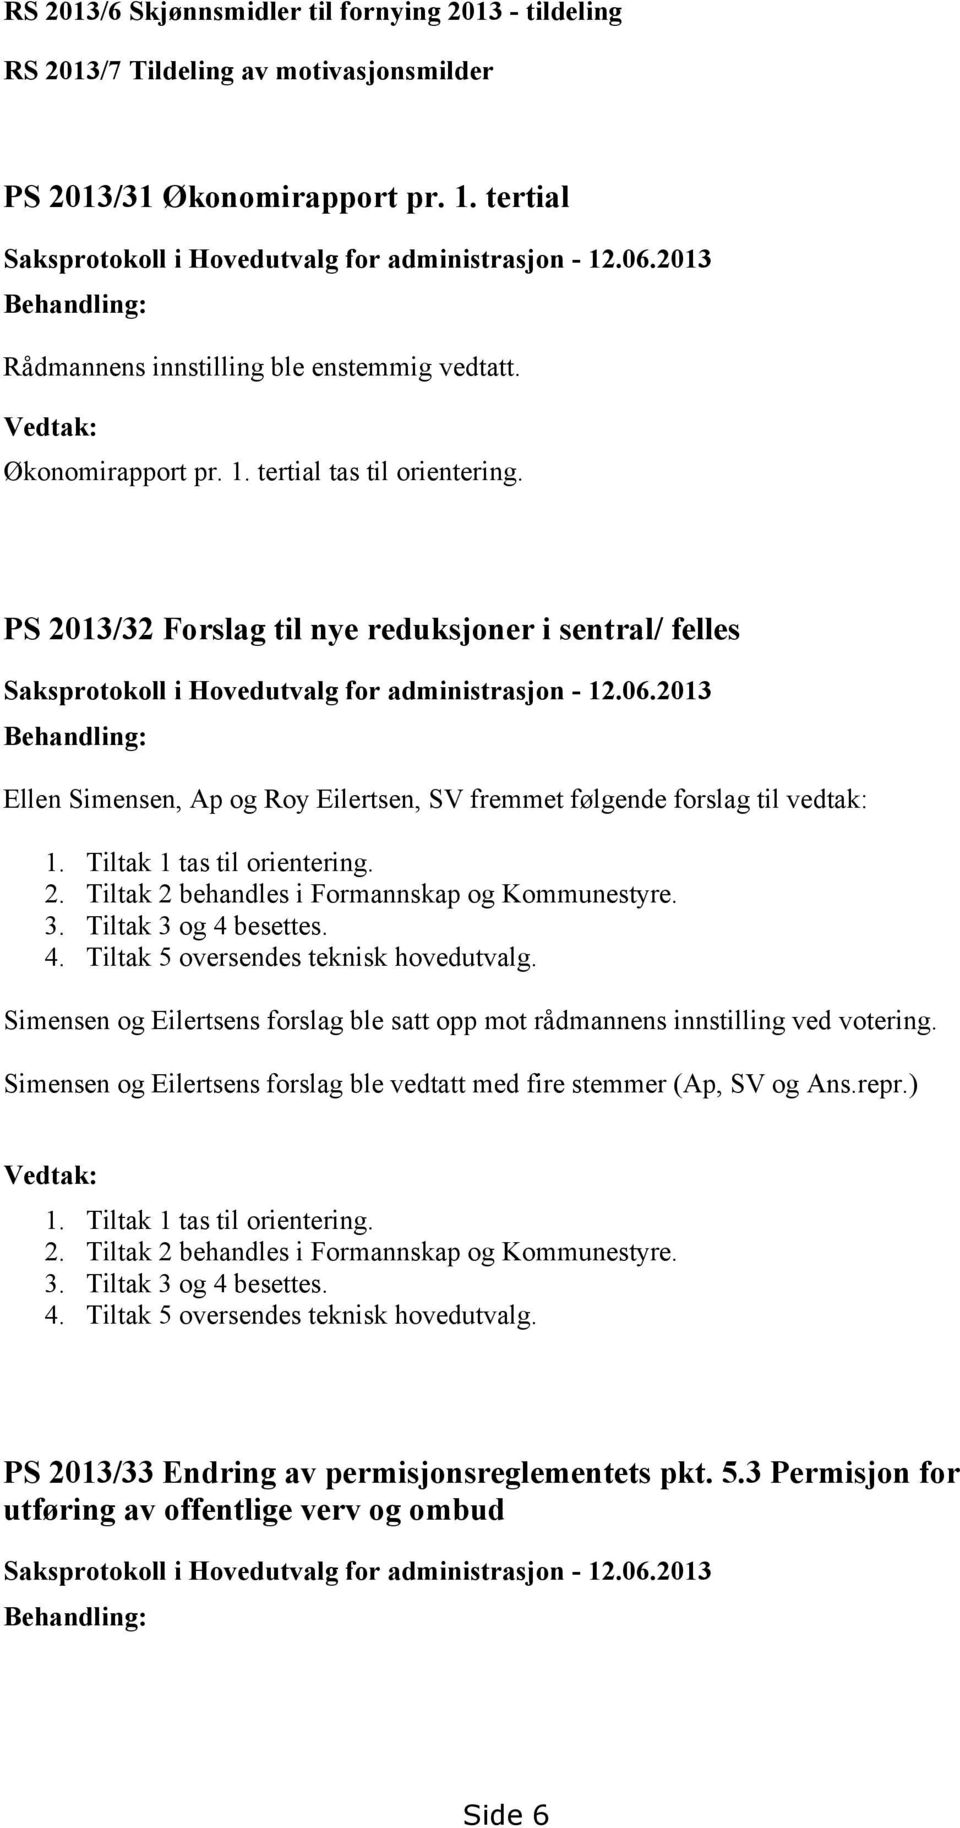 PS 2013/32 Forslag til nye reduksjoner i sentral/ felles Saksprotokoll i Hovedutvalg for administrasjon - 12.06.